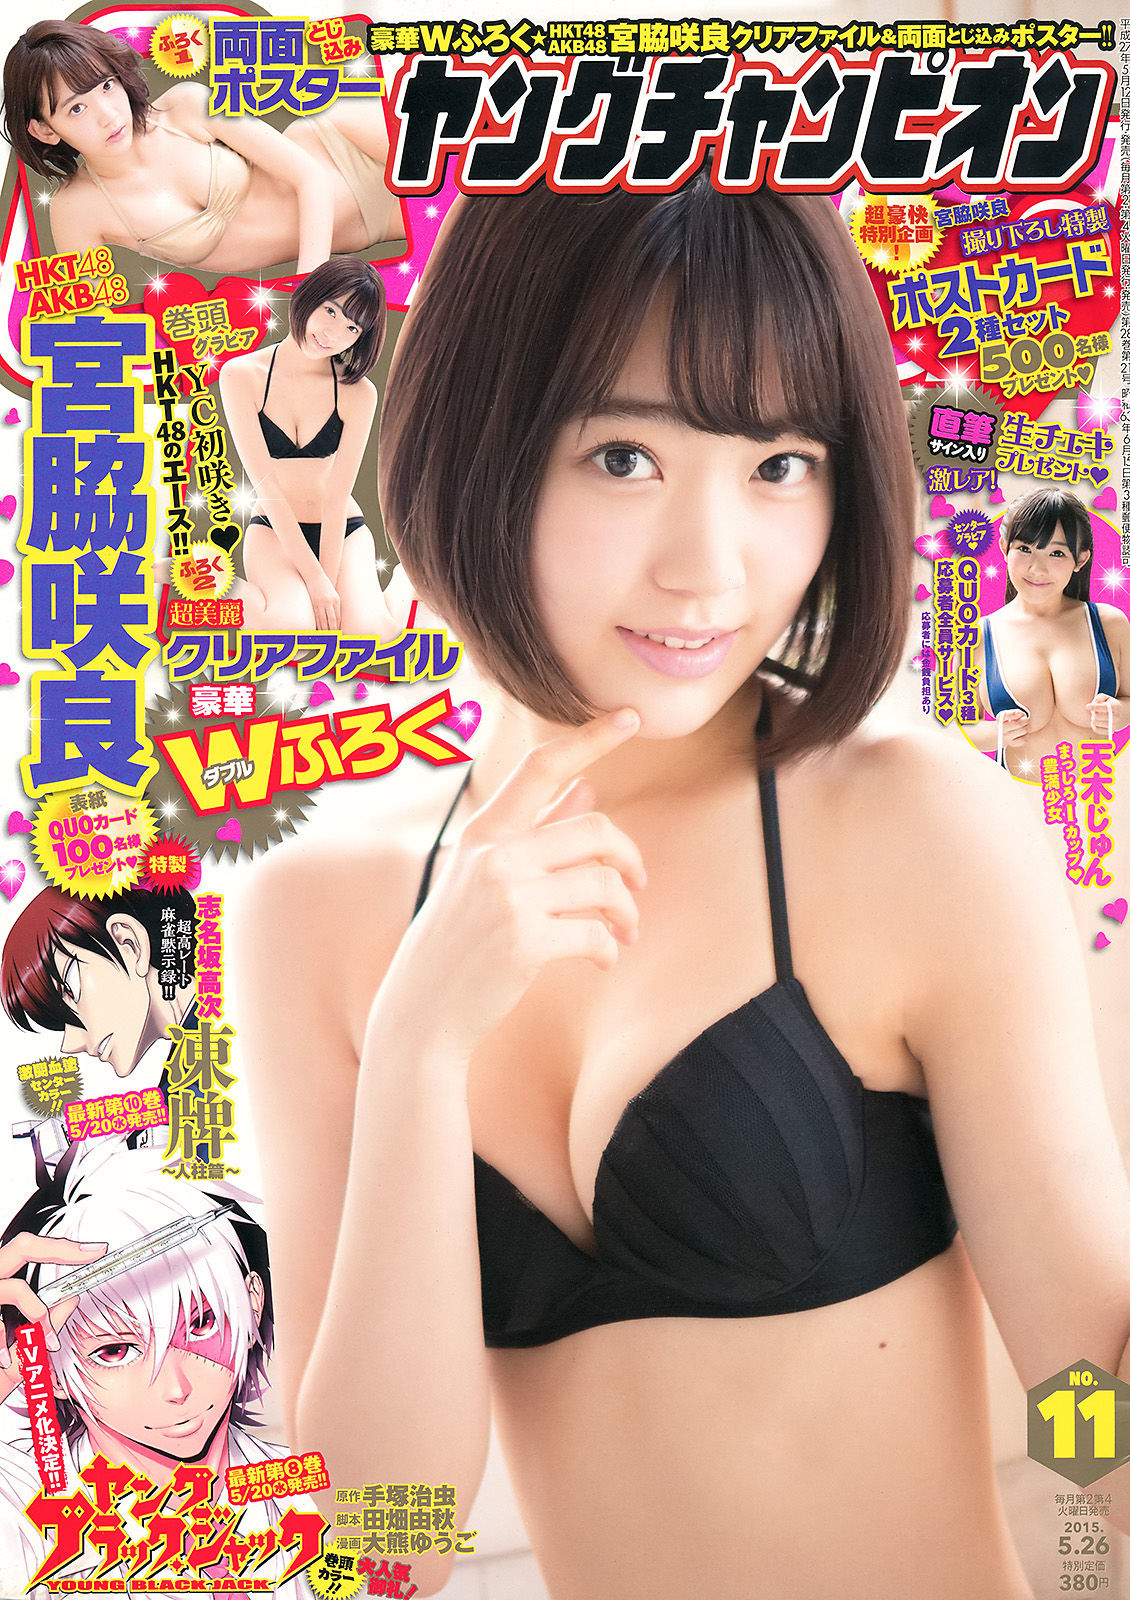 [Young Champion] Sakura Miyawaki Jun Amaki 2015 No.11 Photograph Page 11 No.7e36f1